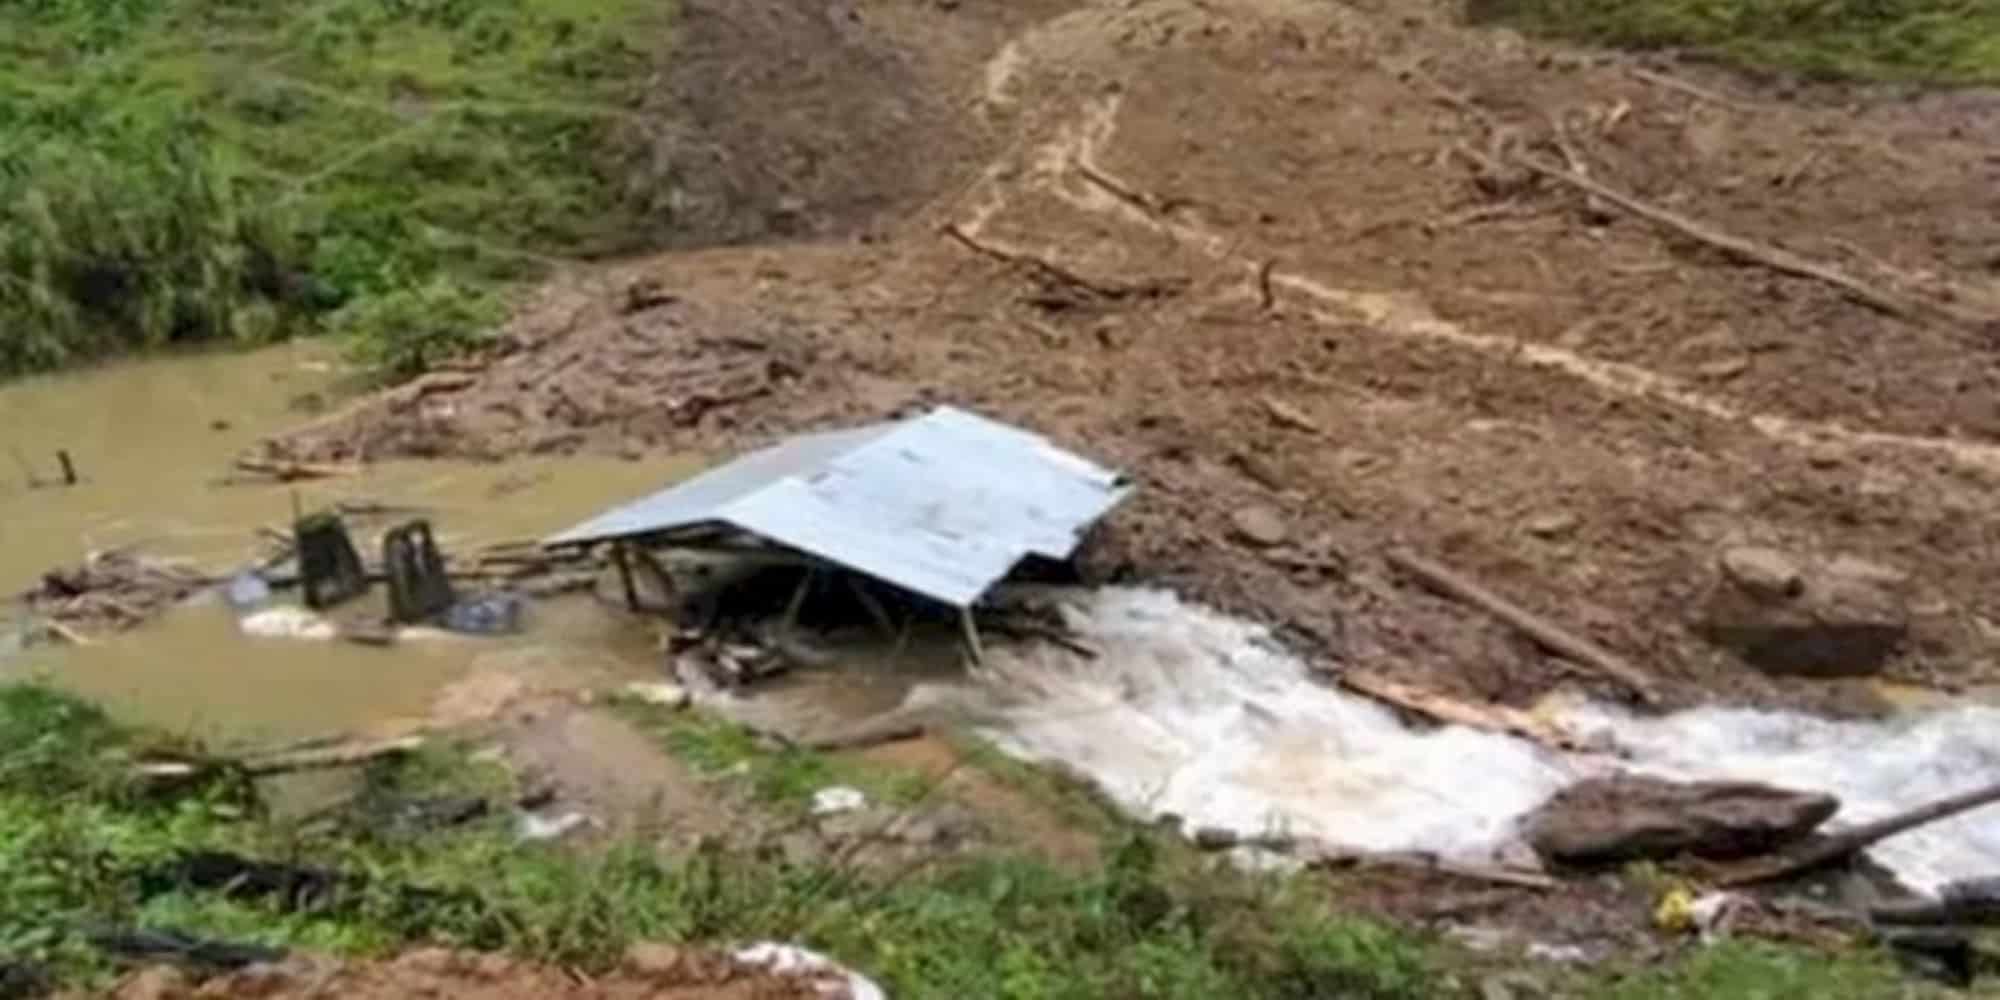 Τουλάχιστον δώδεκα νεκροί και δύο αγνοούμενοι μετά τον χείμαρρο λάσπης που έπληξε μεταλλείο στην Κολομβία (εικόνες & βίντεο)